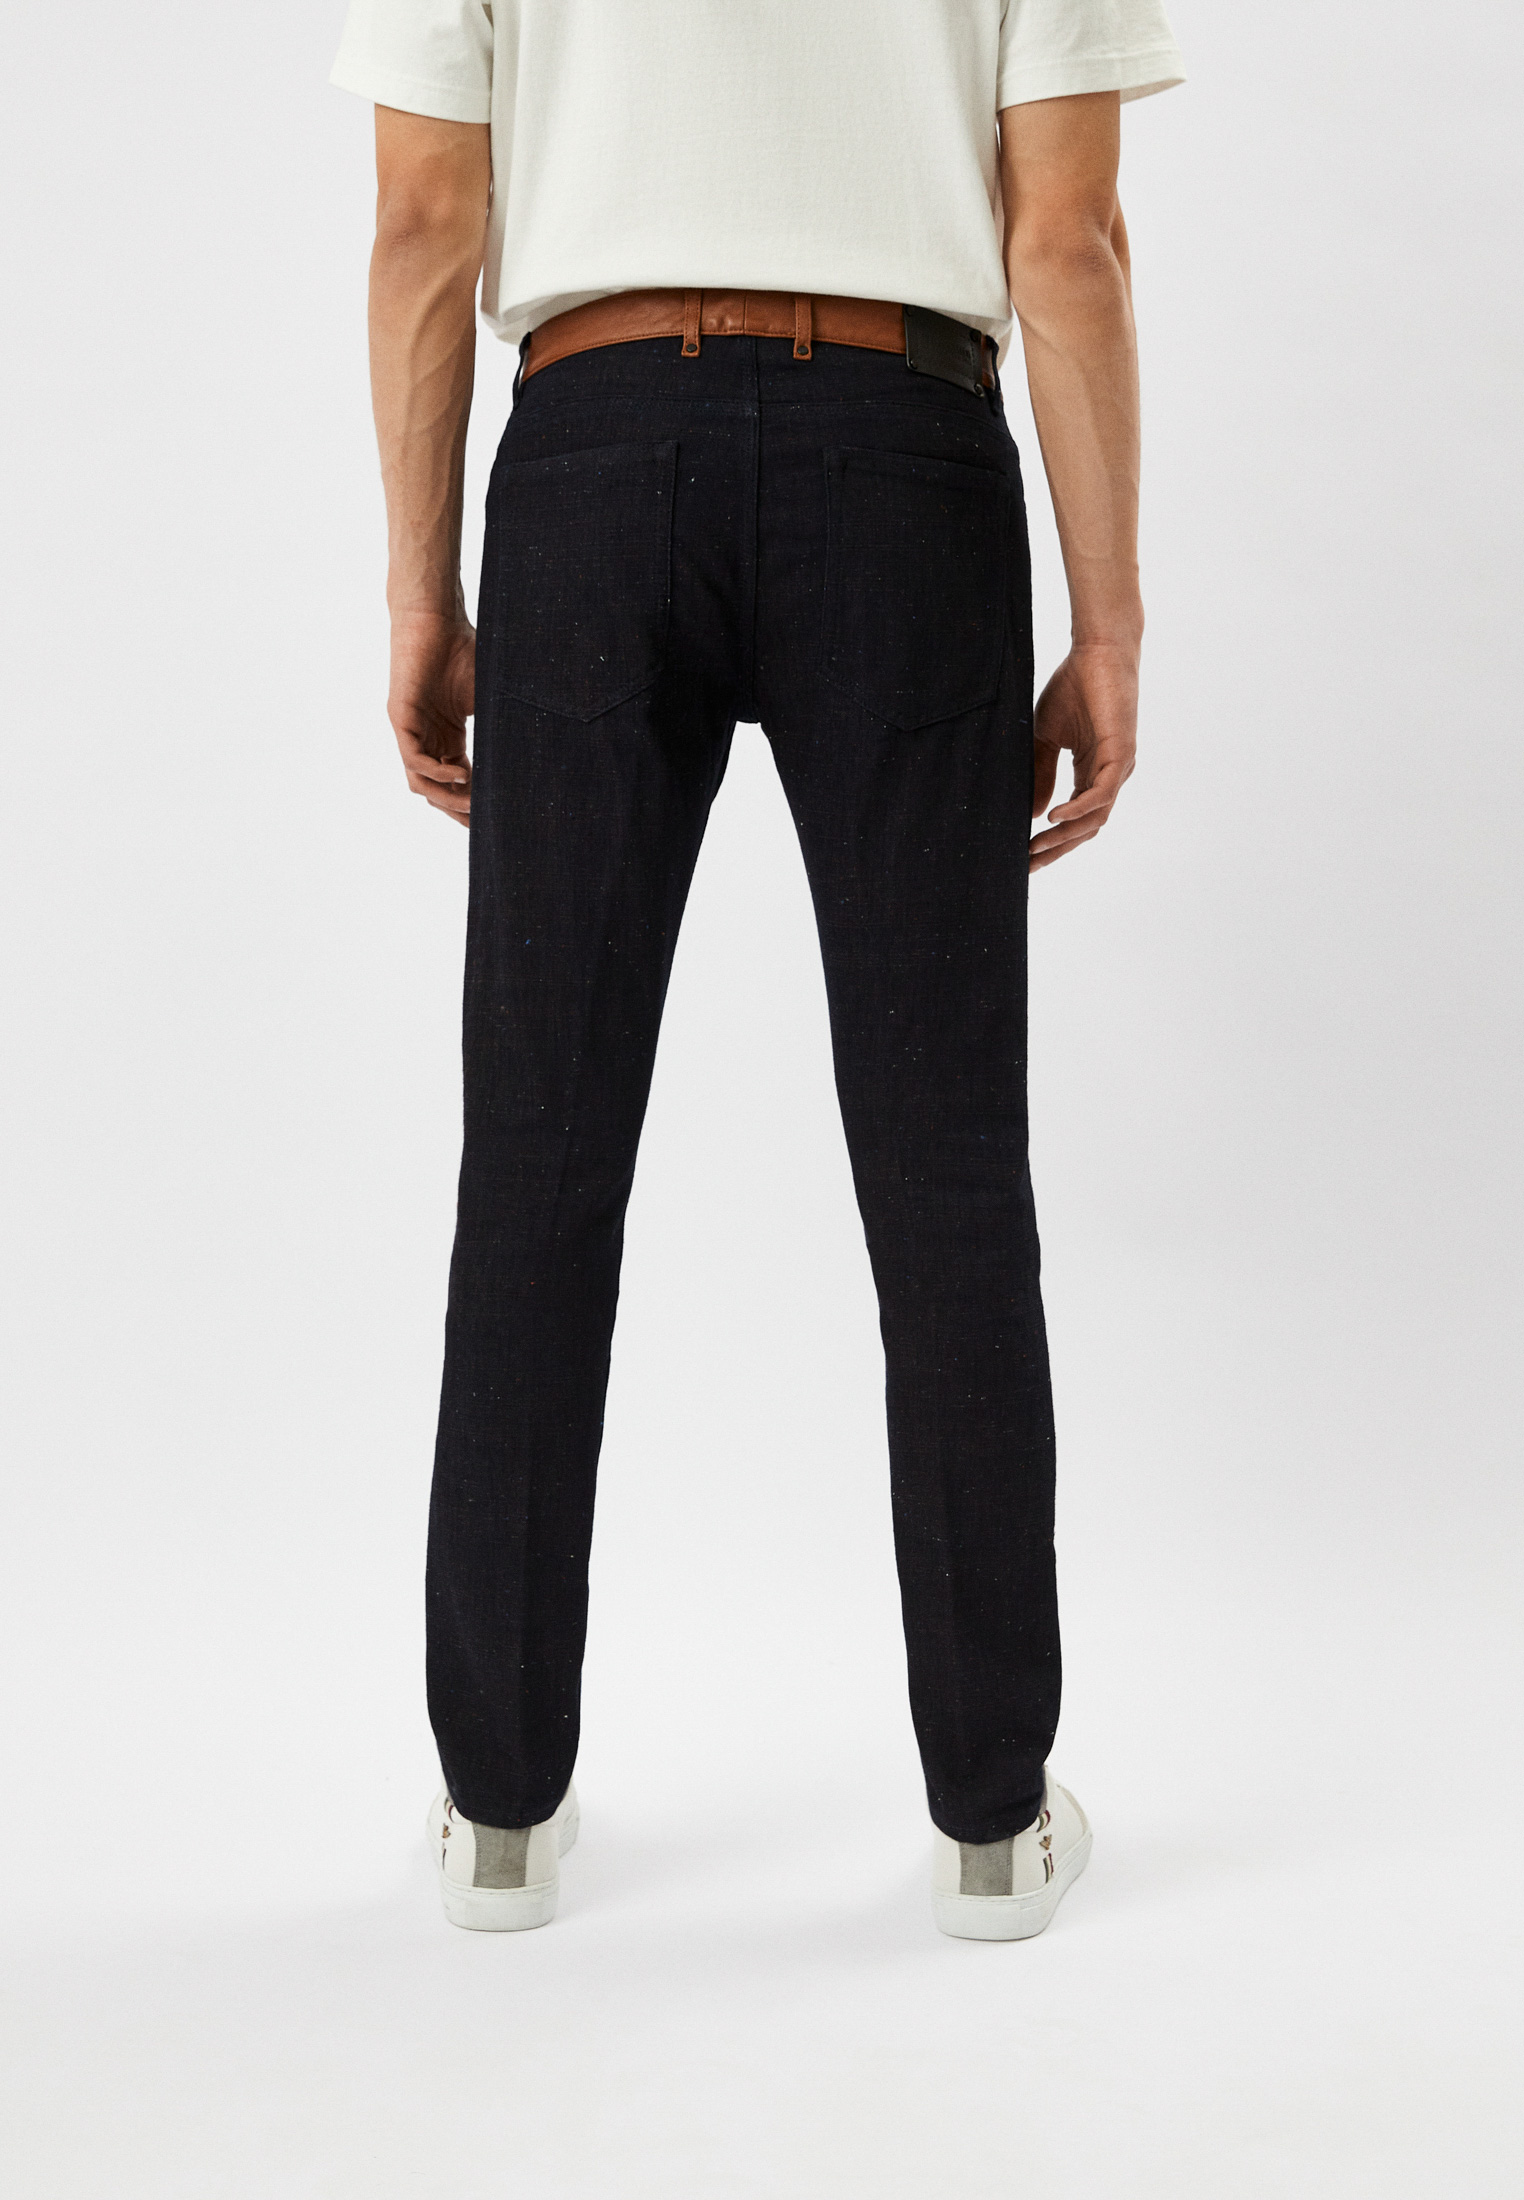 Мужские повседневные брюки Trussardi (Труссарди) 32J000201T001936A010: изображение 3